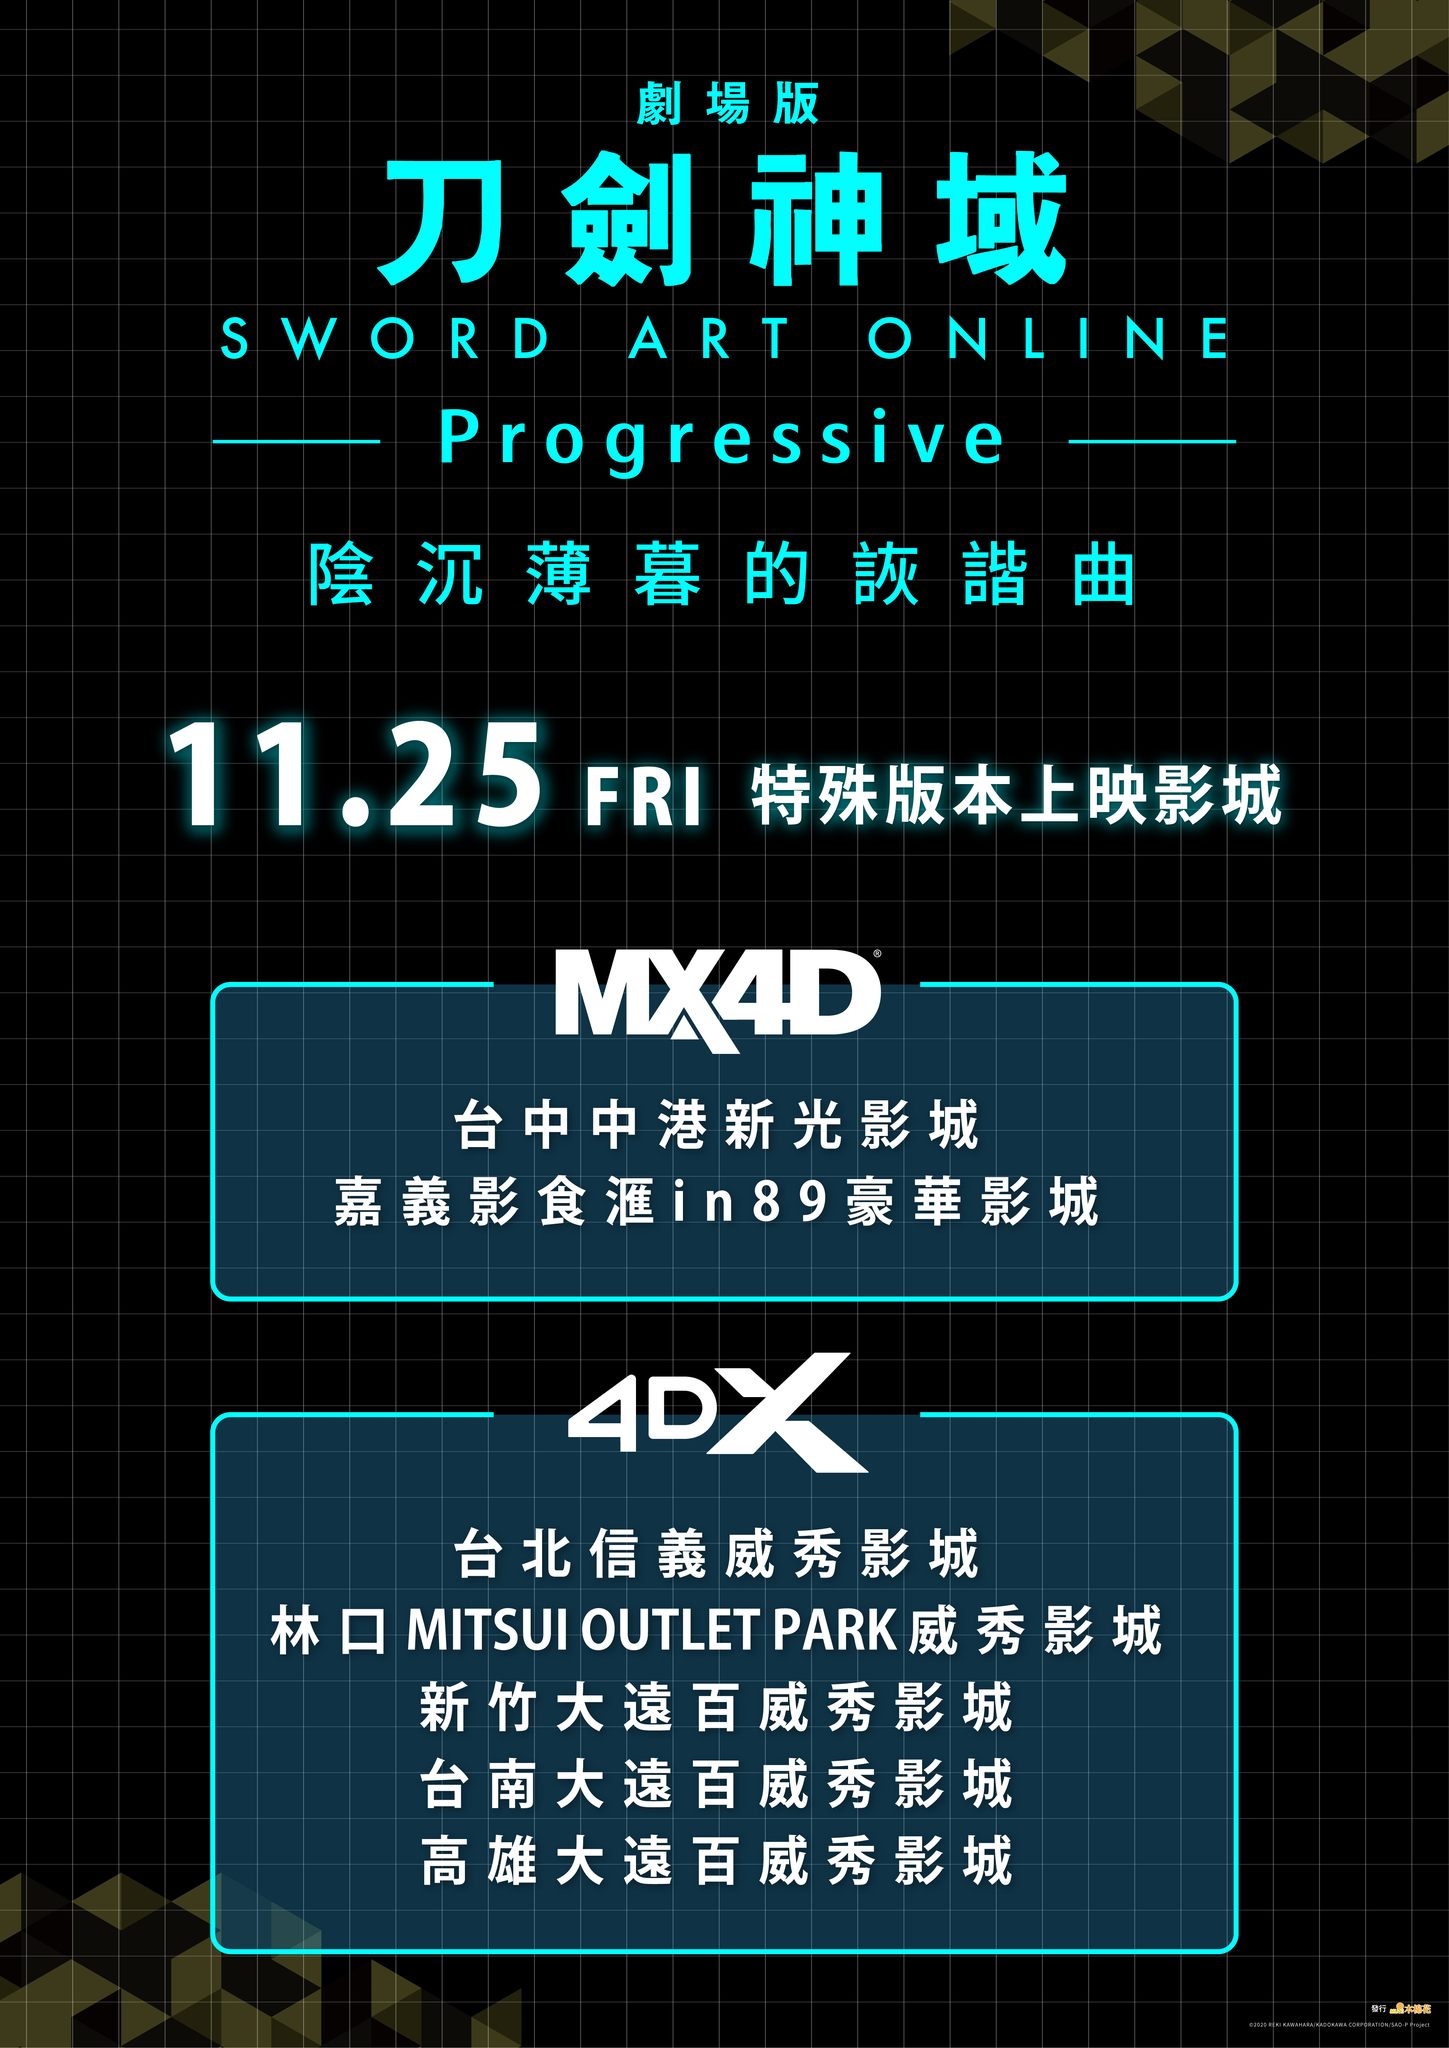 《刀劍神域劇場版-Progressive- 陰沉薄暮的詼諧曲》4DX、MX4D 臺灣2022年11月25日上映_2.jpg